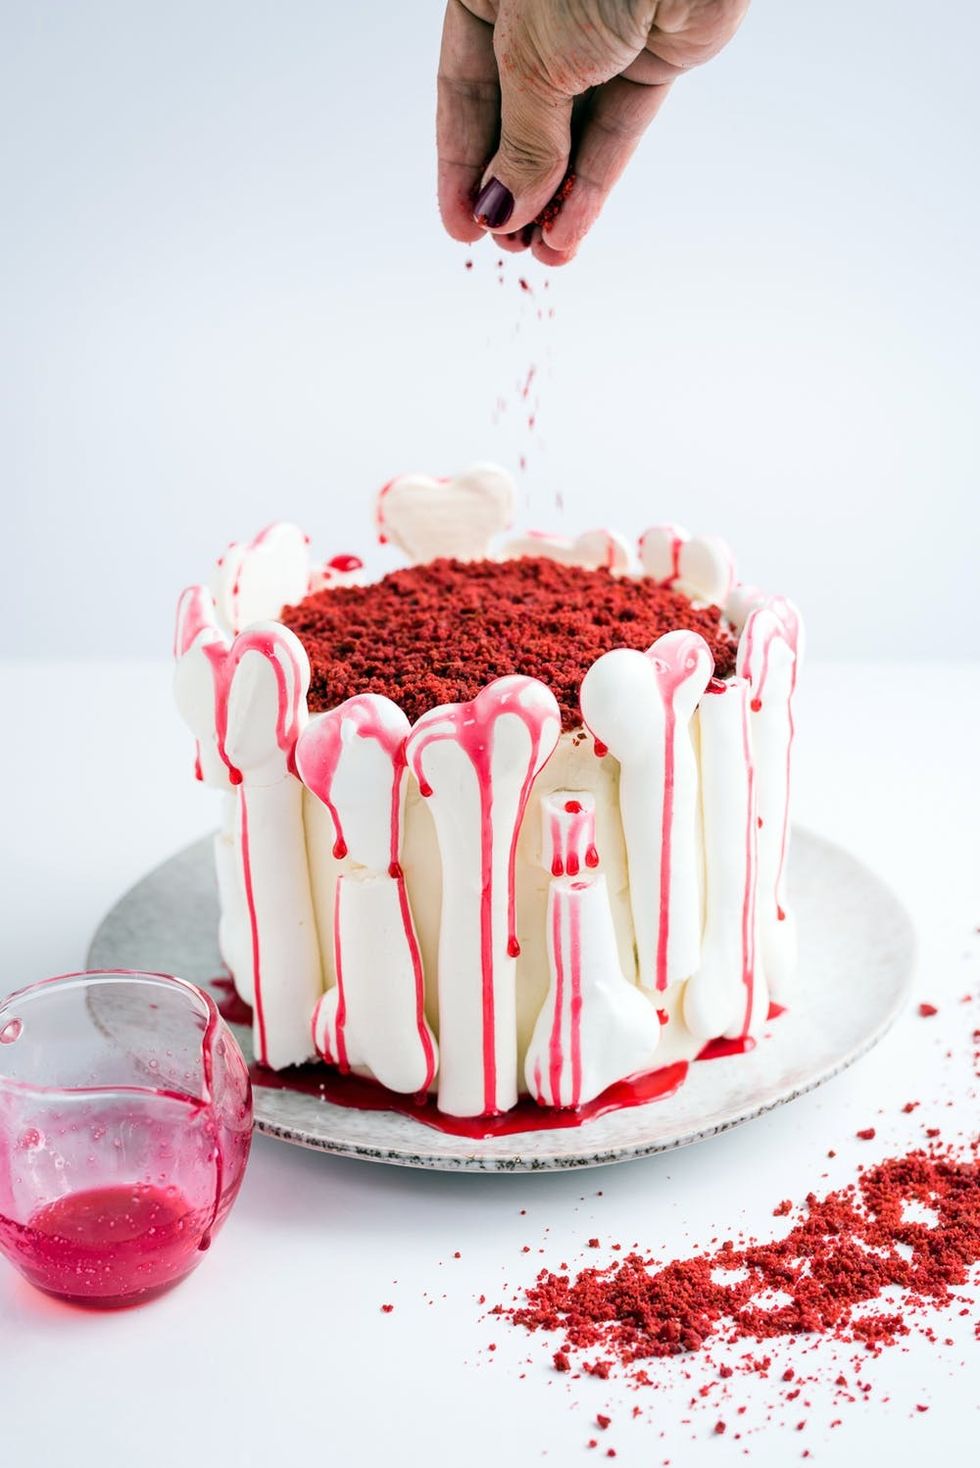 Halloween Red Velvet Cake Recipe